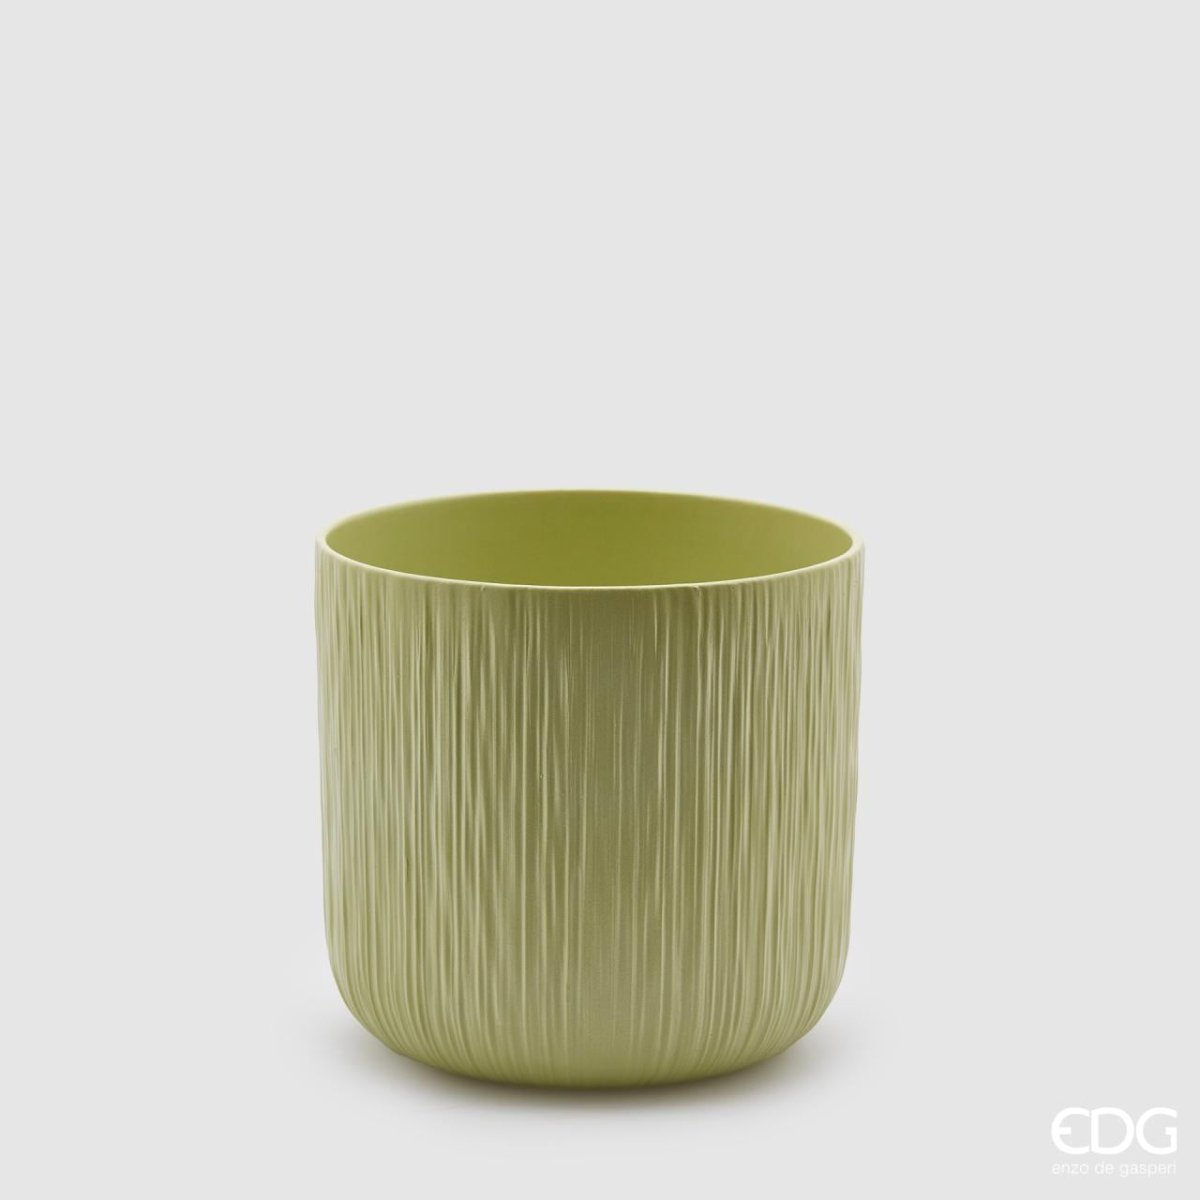 Edg - vaso in ceramica verde rigato | rohome - Rohome